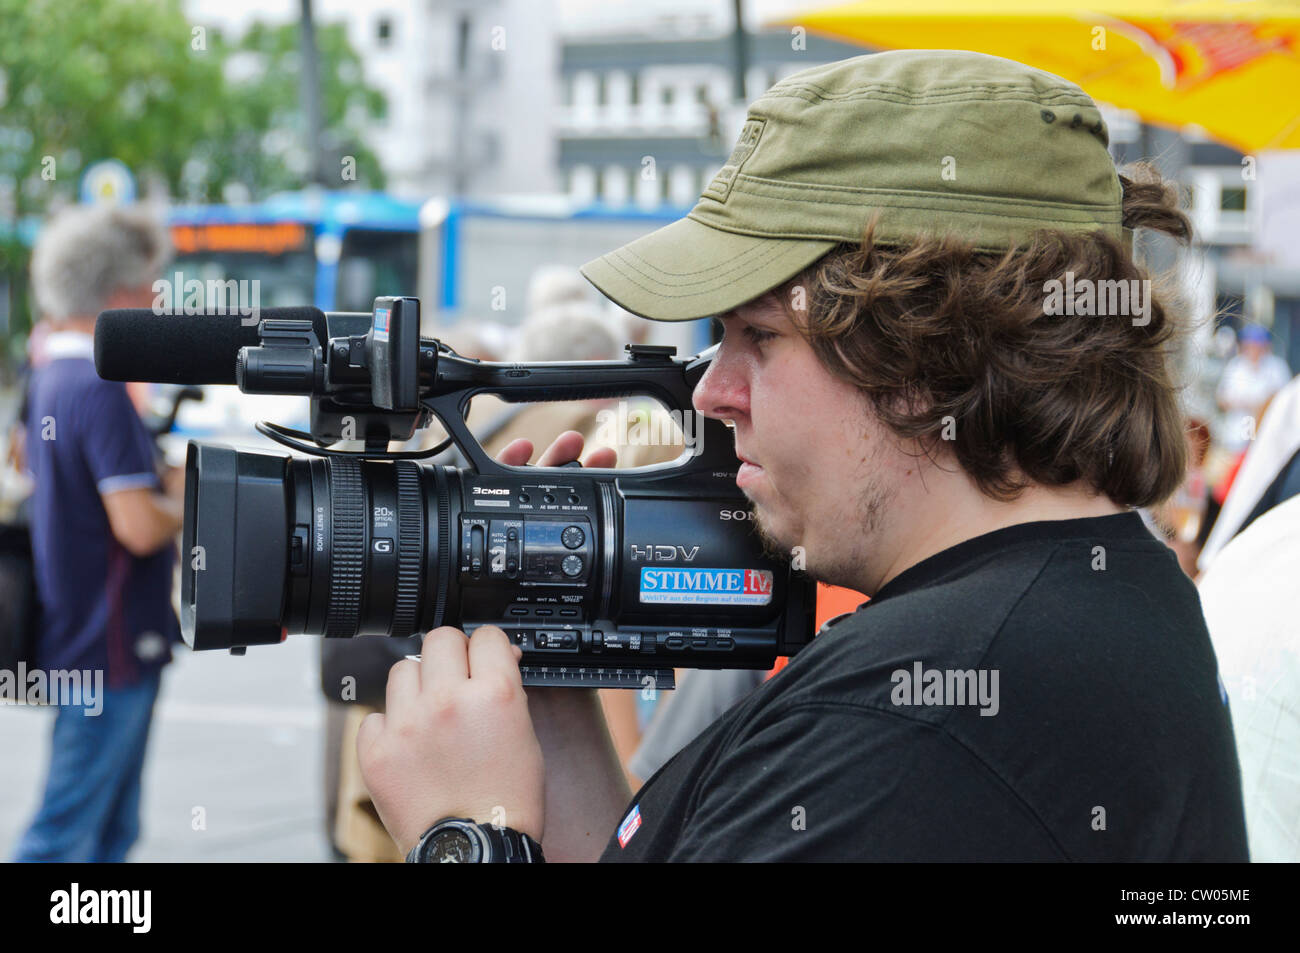 In sovrappeso cameraman tedesco dal regionale stazione broadcast STIMME.TV tiro con semi-professionale HDV di Sony telecamera video Foto Stock